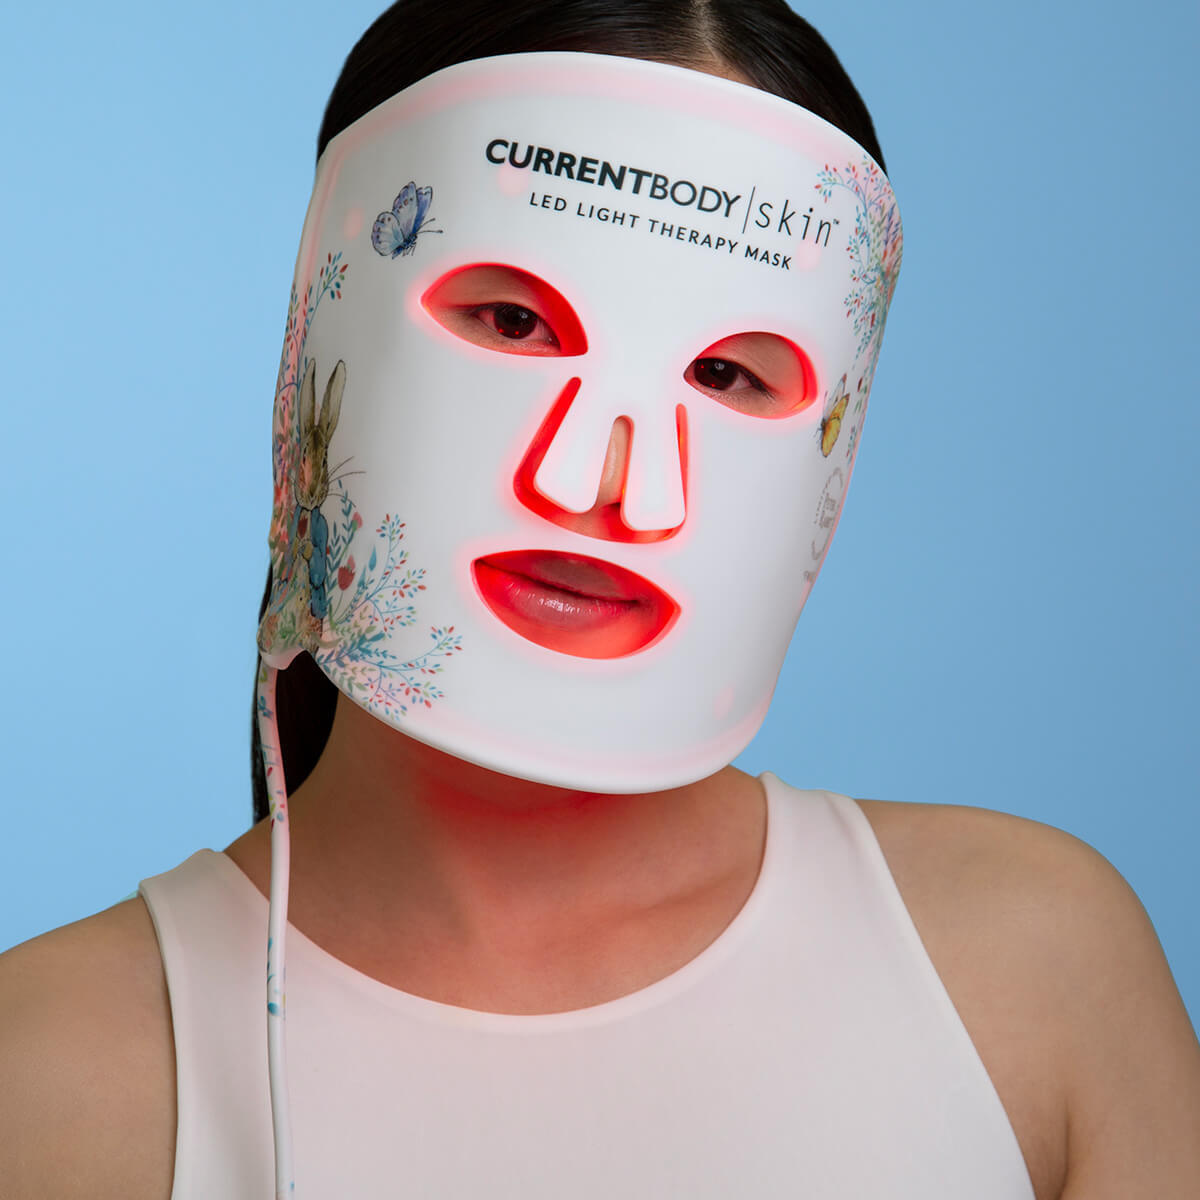 CurrentBody Skin X ピーターラビット LEDライトセラピーマスク 特別価格